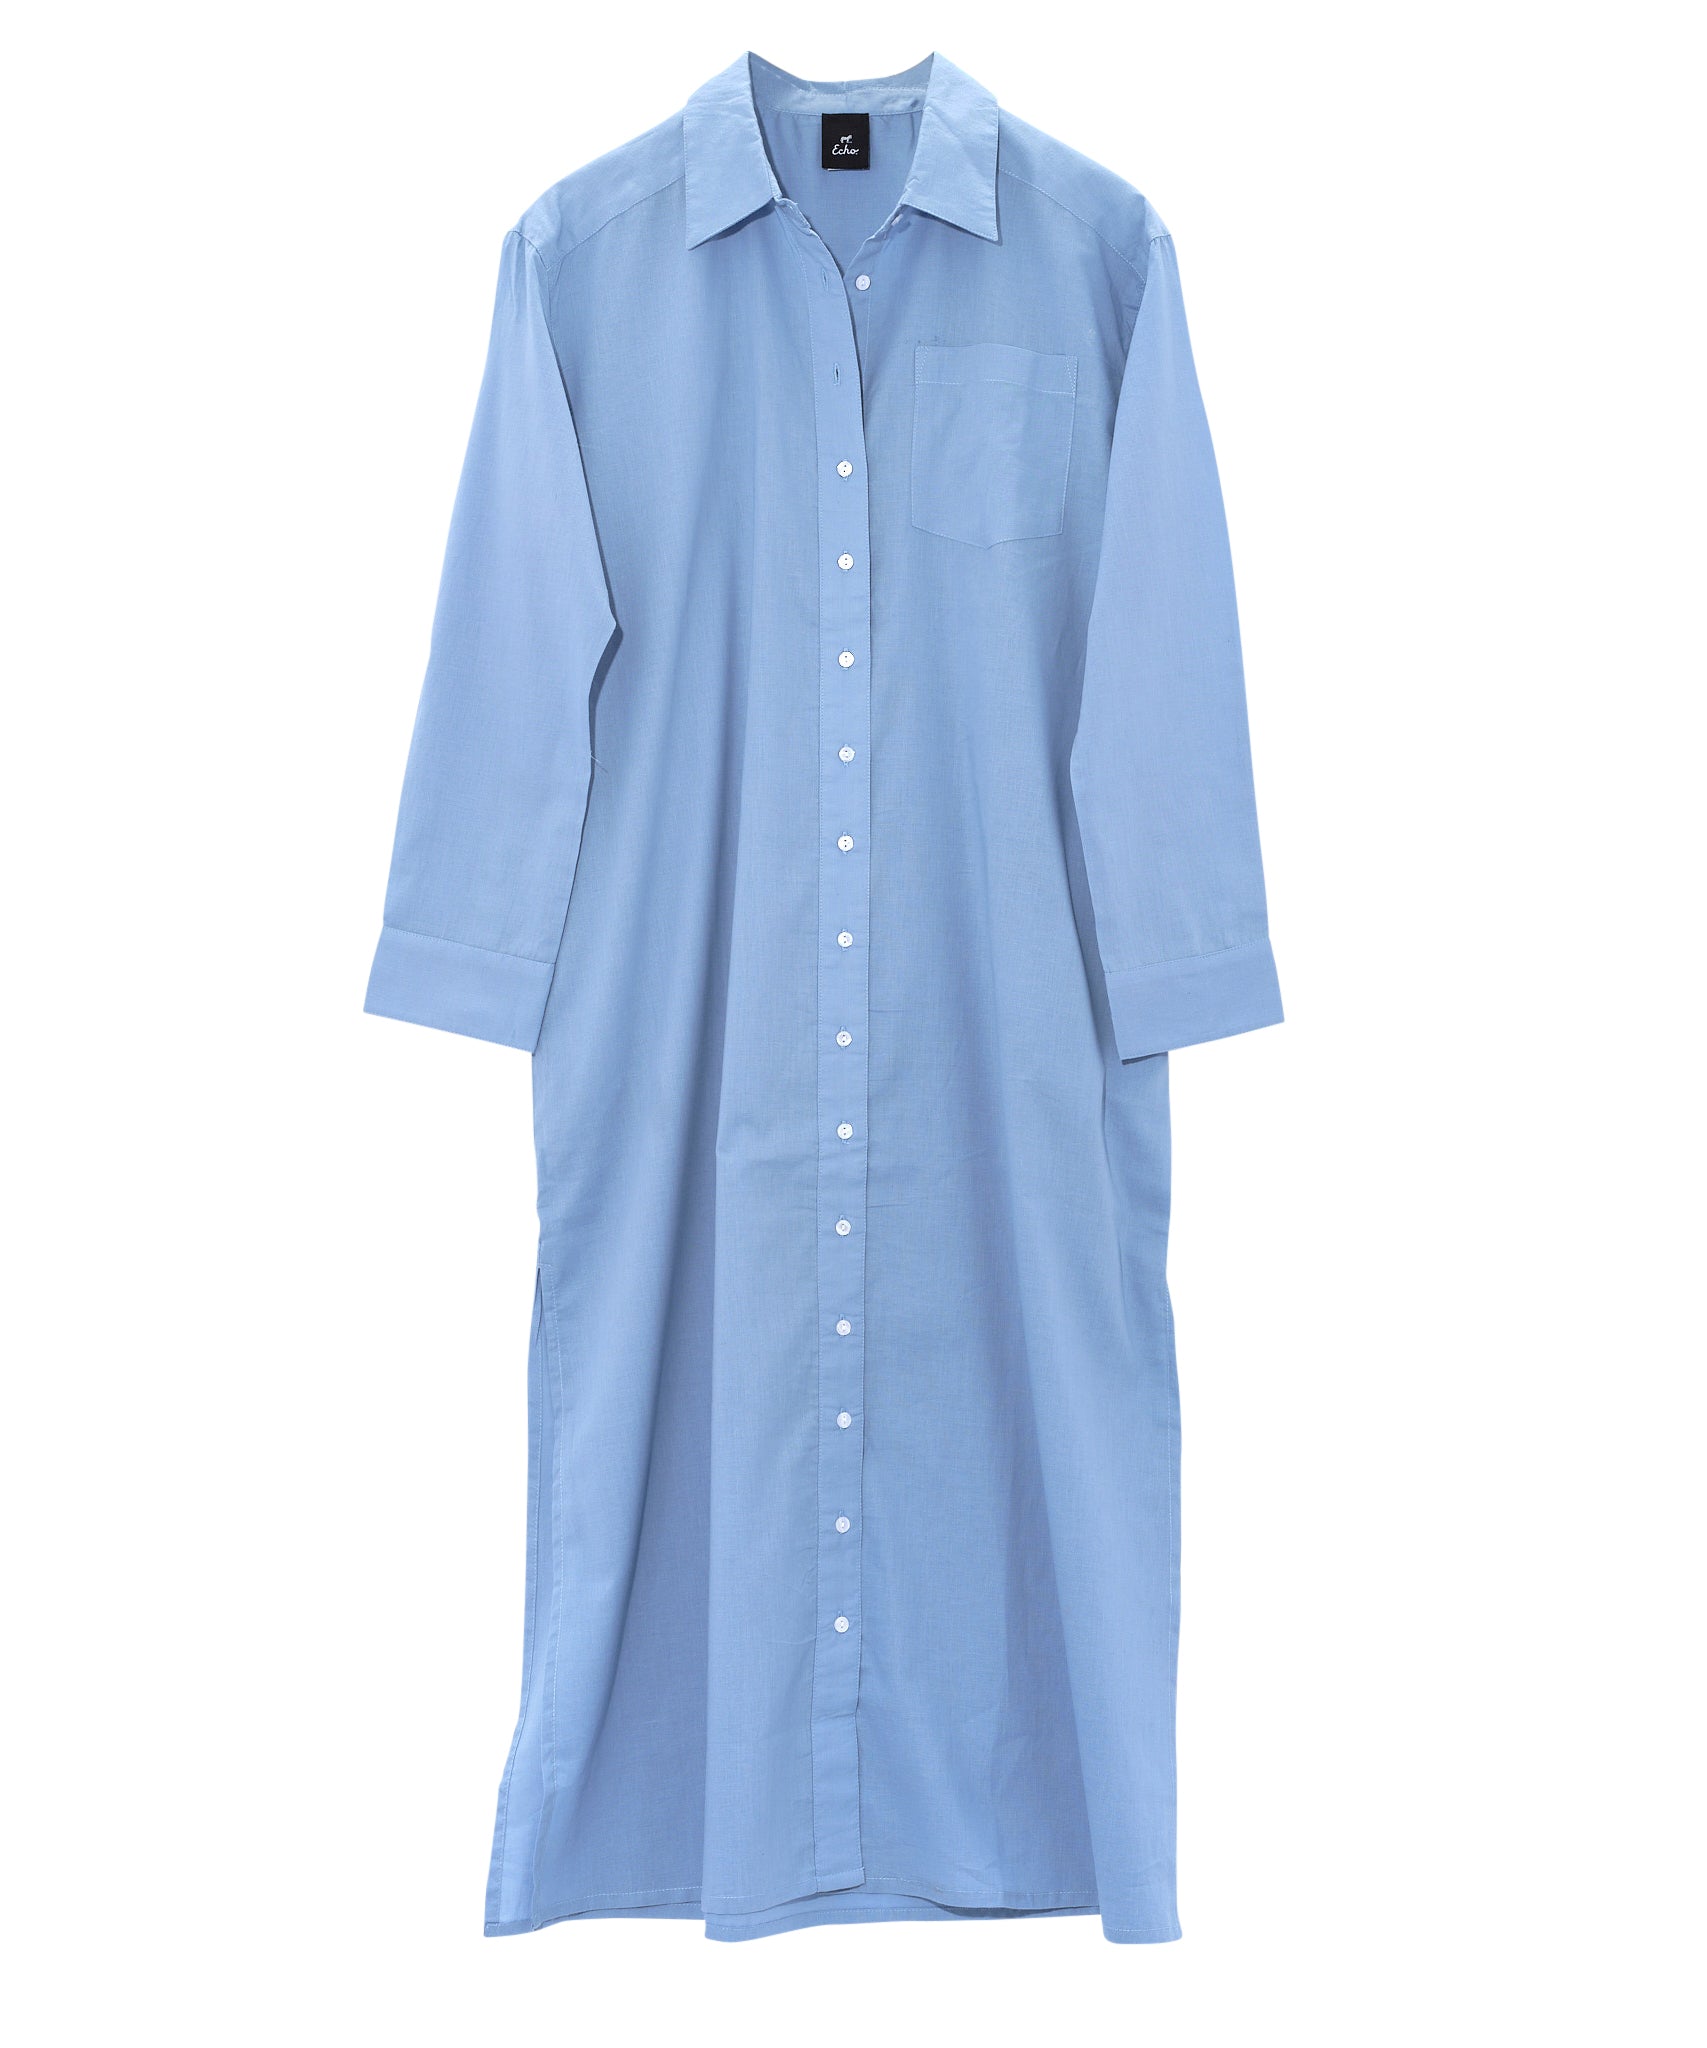 Solana Maxi Shirt Dress in color capri